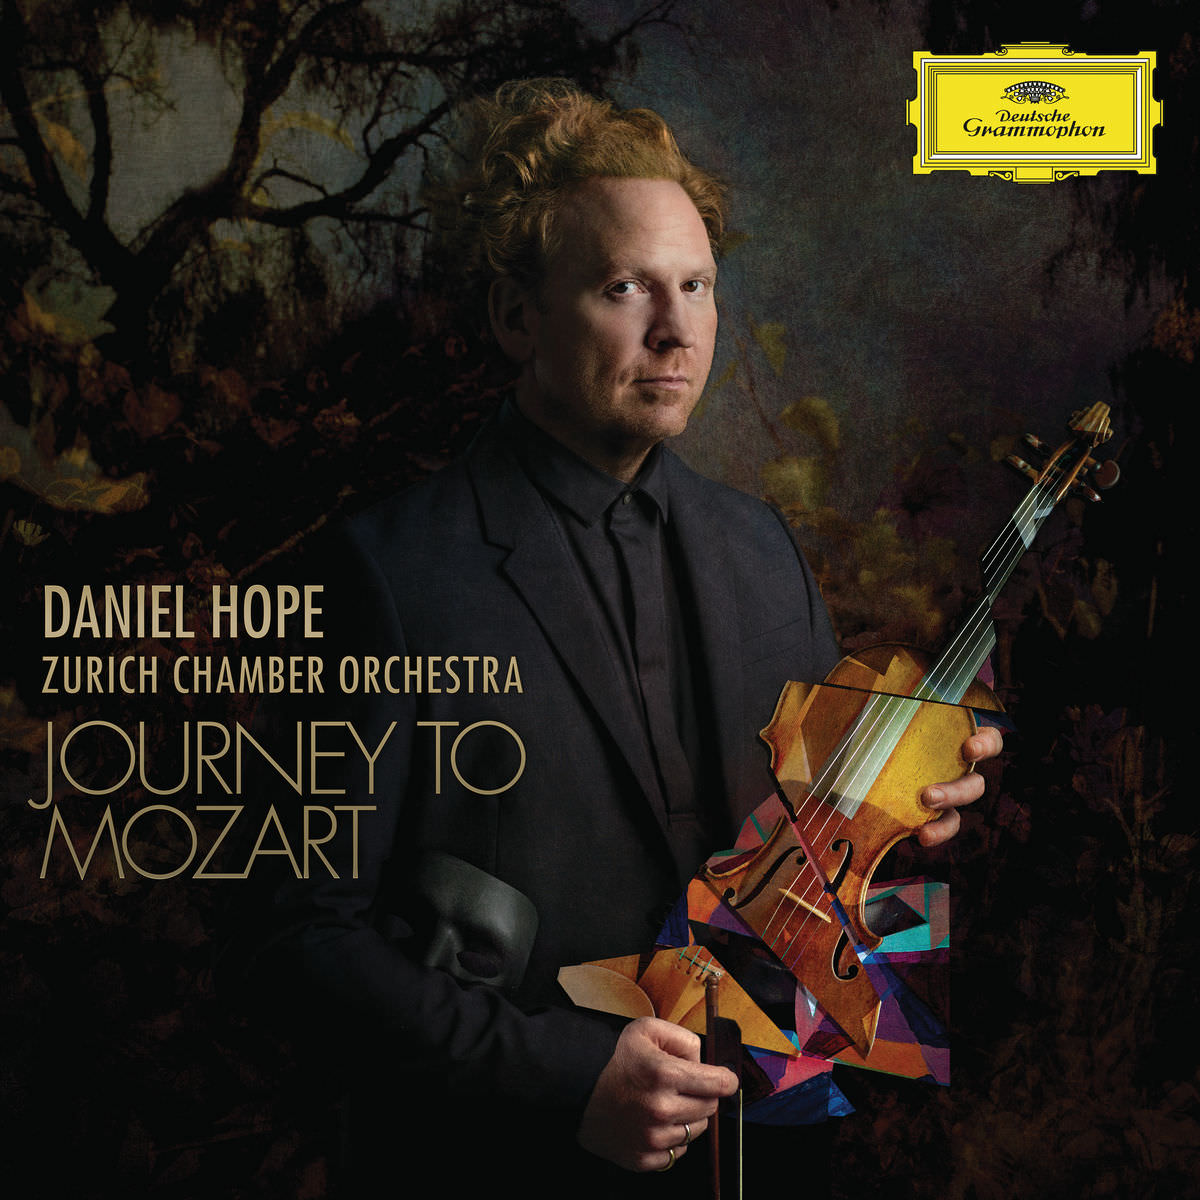 Daniel Hope & Zurich Chamber Orchestra – Journey to Mozart (2018) [FLAC 24bit/96kHz]